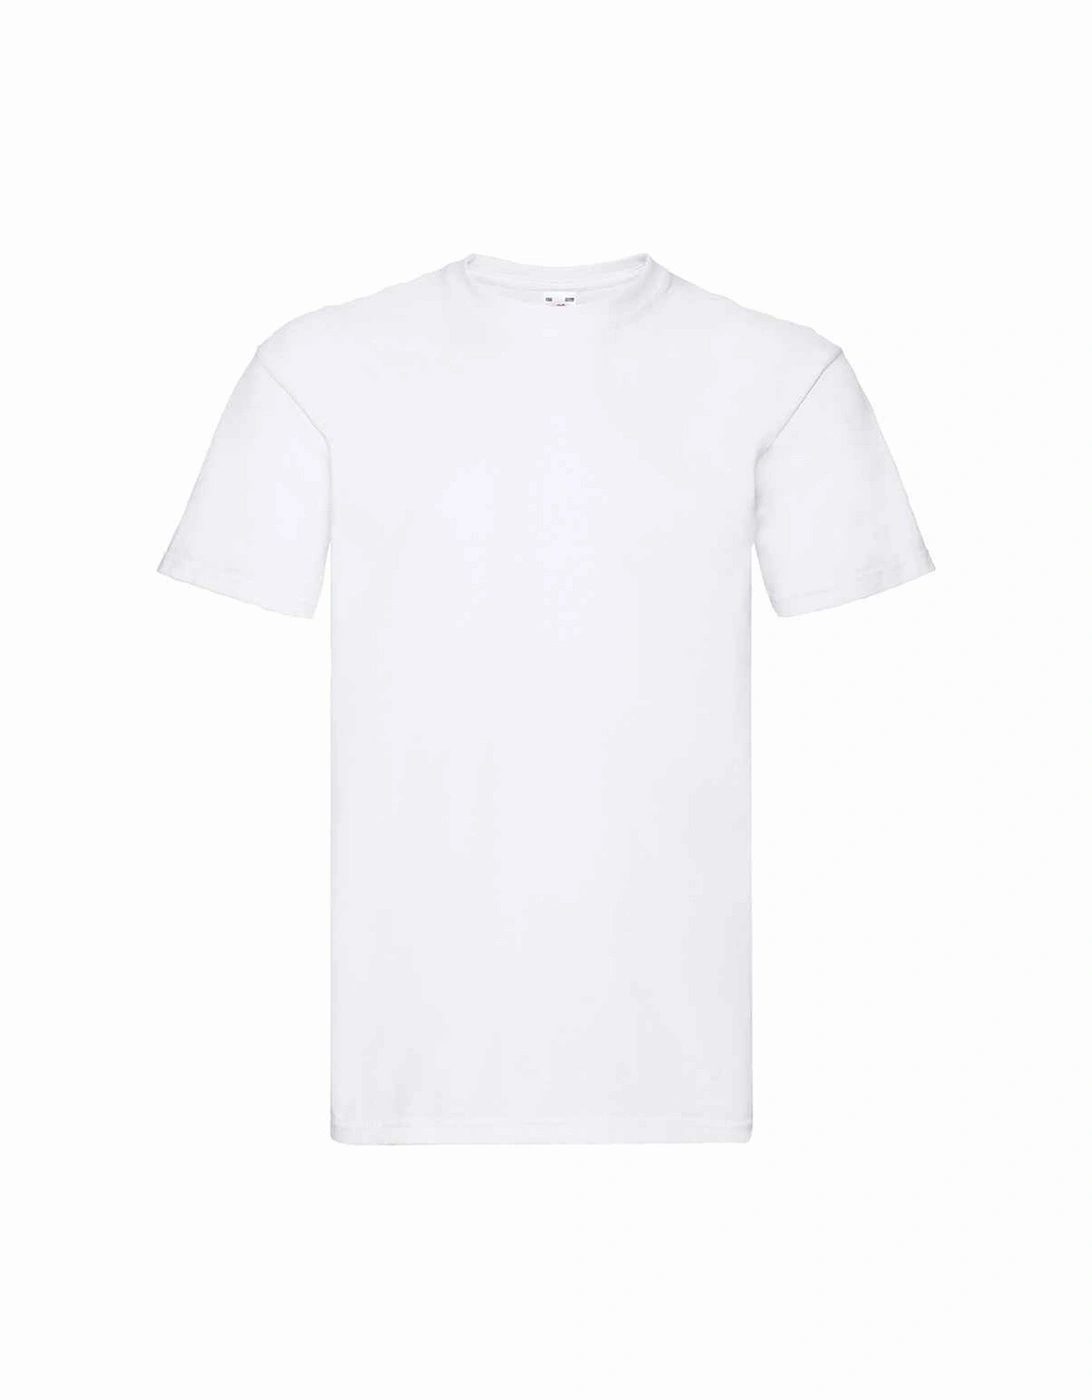 Unisex Adult Super Premium Plain T-Shirt, 4 of 3